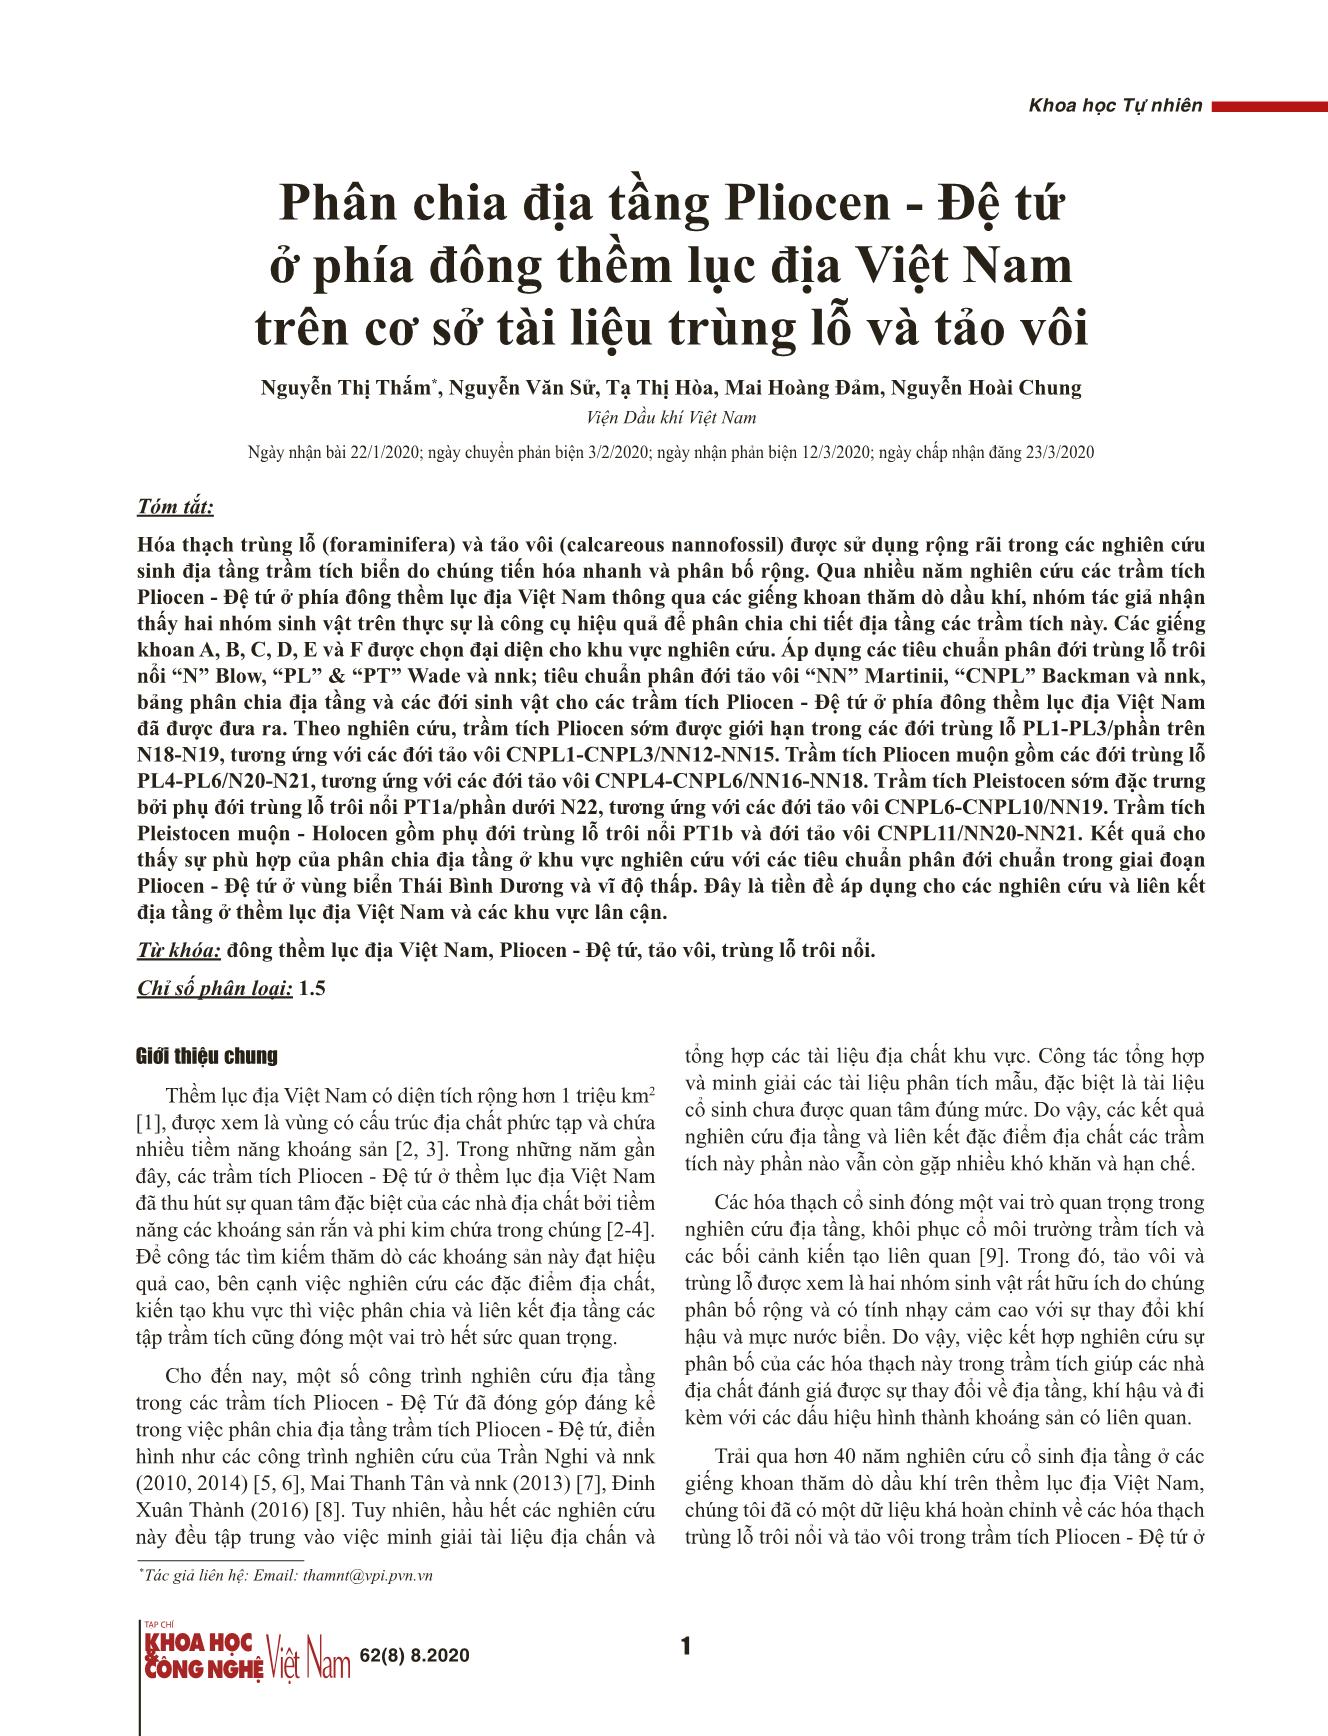 Phân chia địa tầng Pliocen - Đệ tứ ở phía đông thềm lục địa Việt Nam trên cơ sở tài liệu trùng lỗ và tảo vôi trang 1